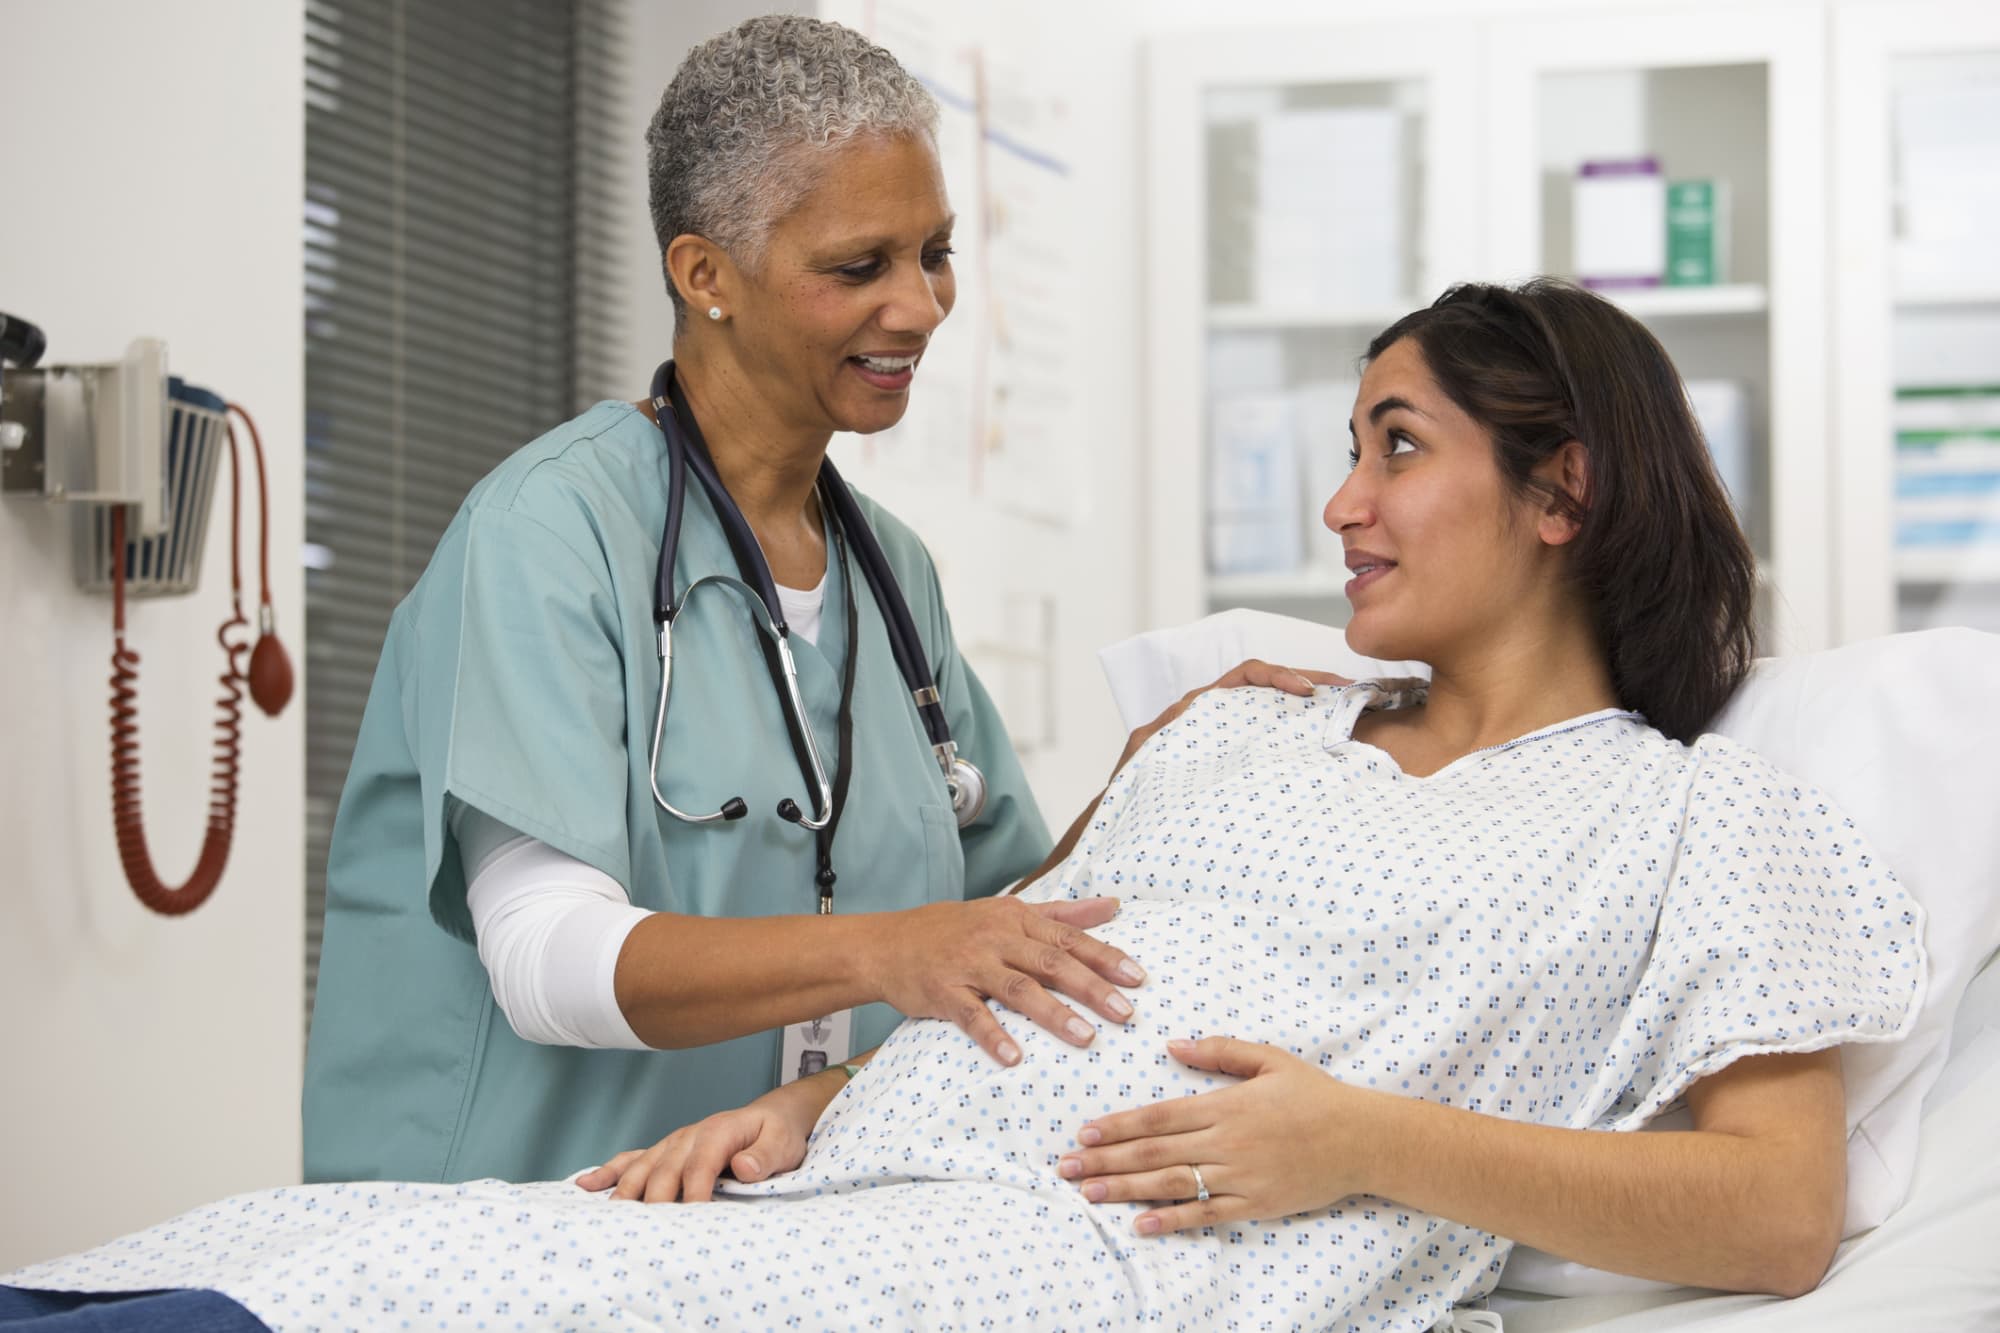 Nurse examining pregnant patient's belly